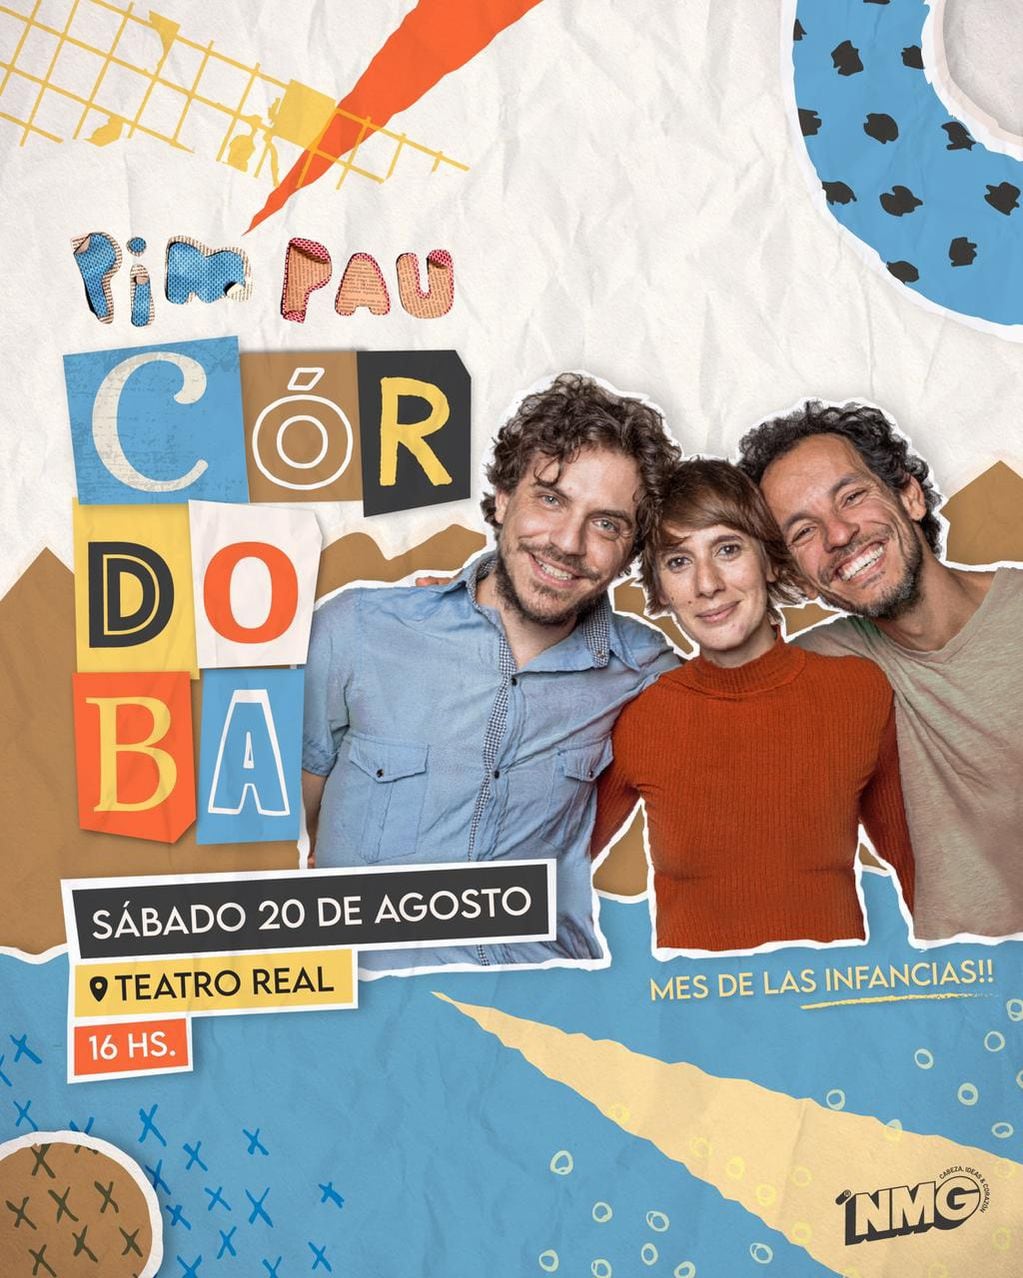 El trío argentino/brasileño llegará este sábado 20 al Teatro Real.